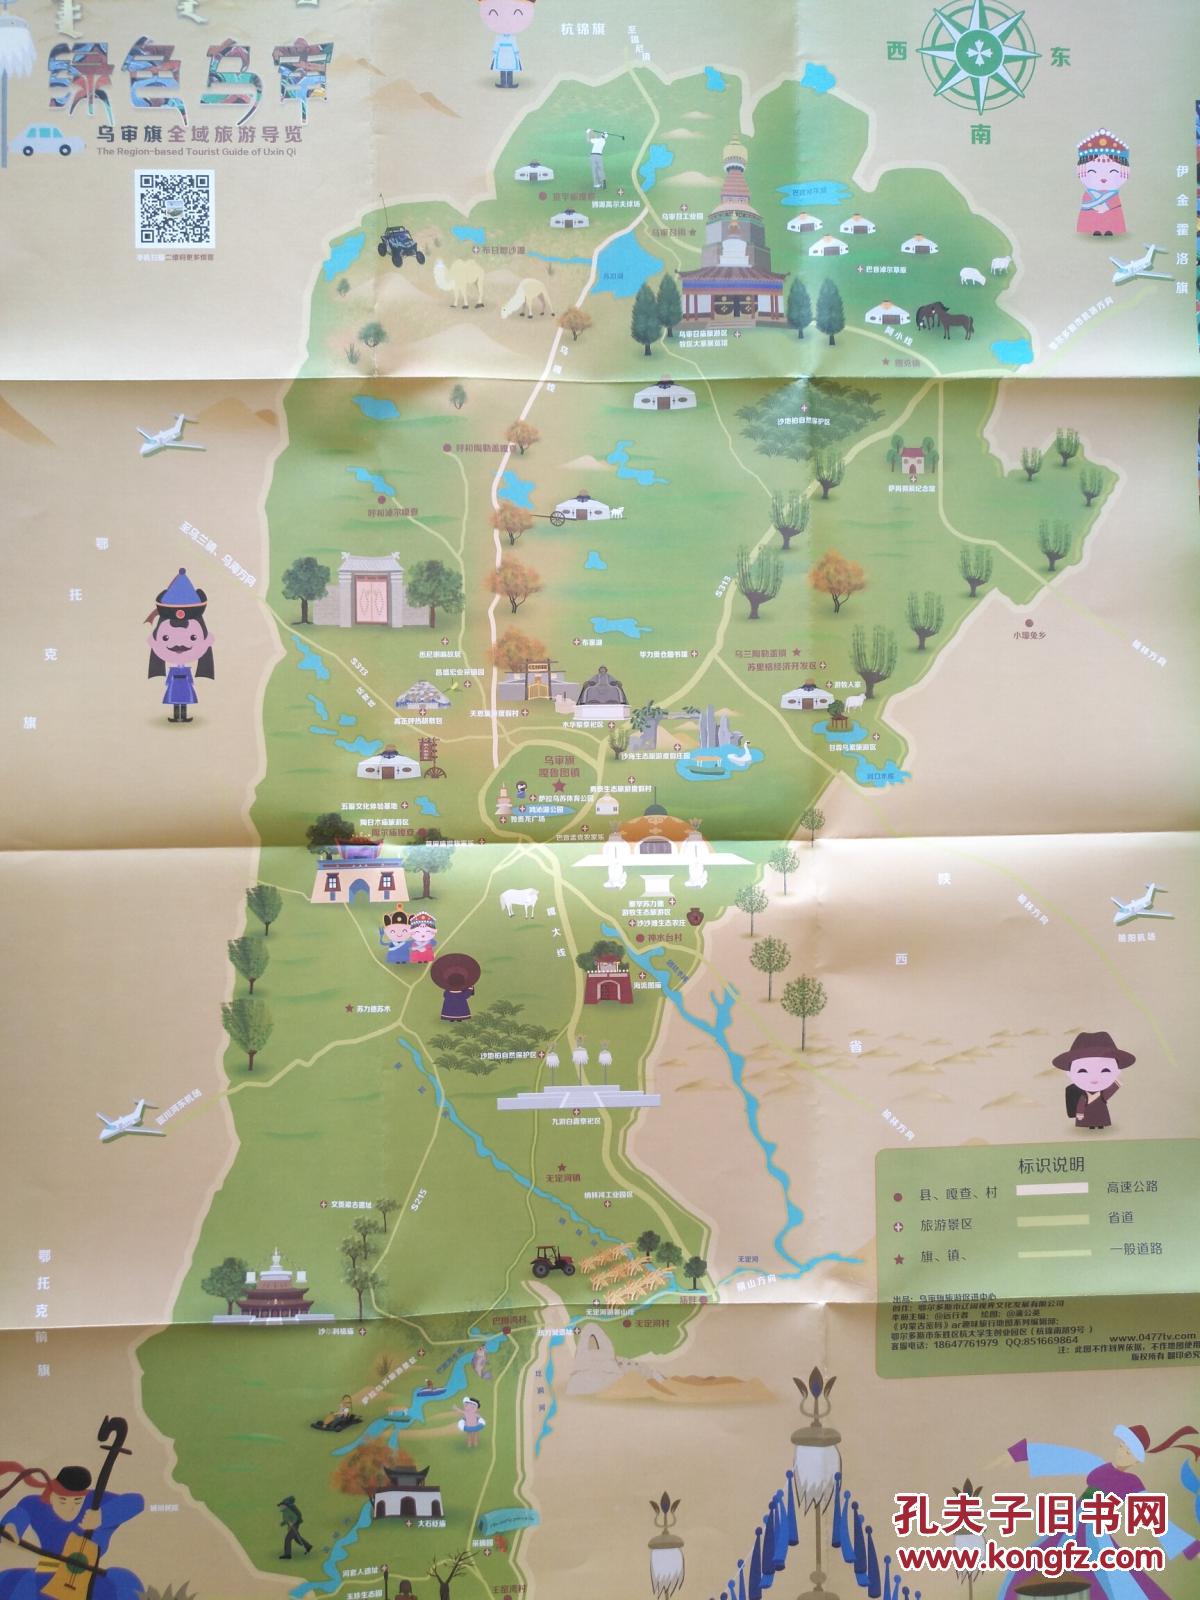 鄂尔多斯市乌审旗全域旅游 手绘地图 乌审旗地图 鄂尔多斯地图图片